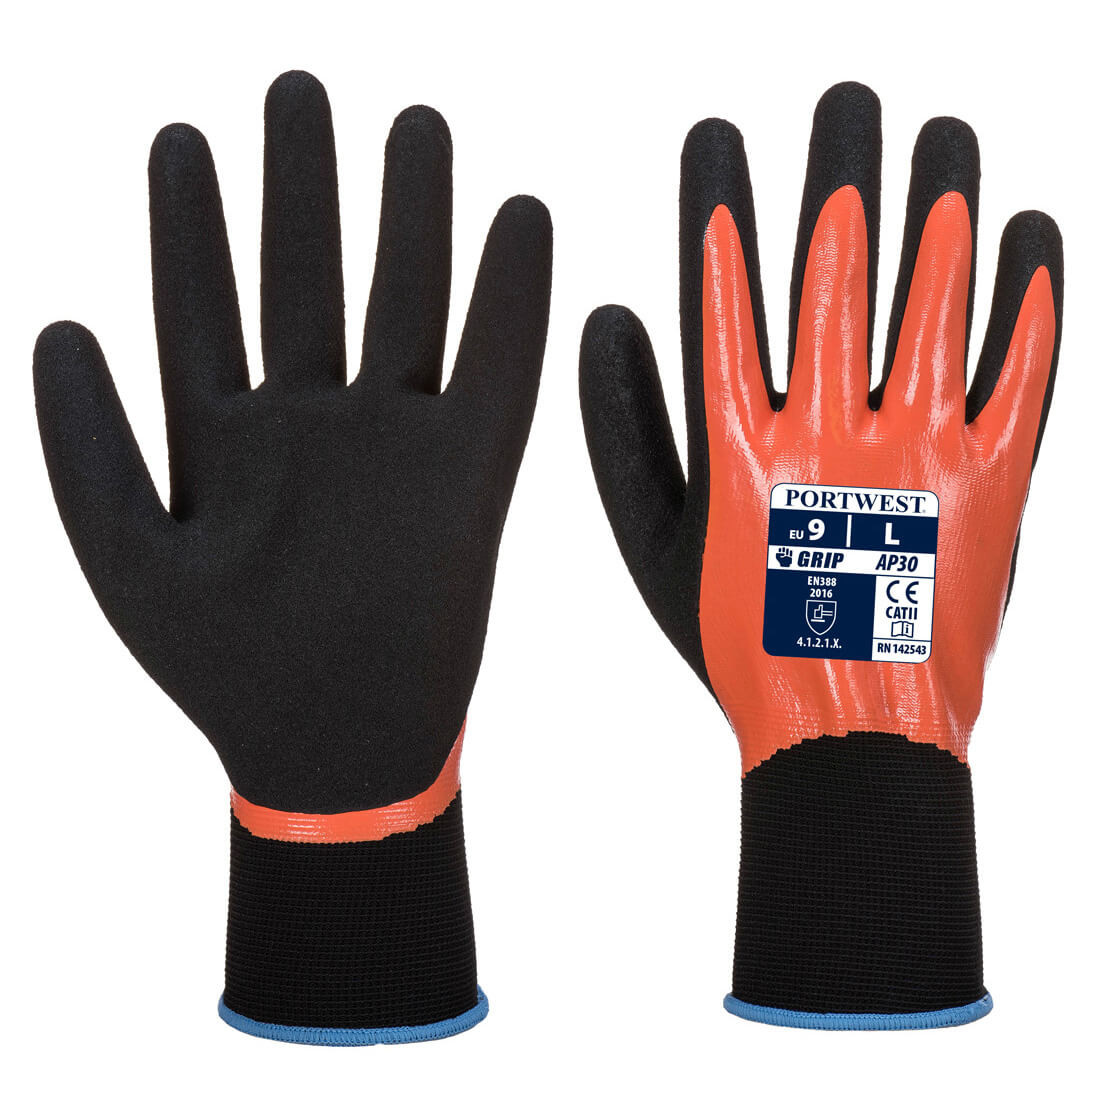 Dermi Pro Glove - Personal protection